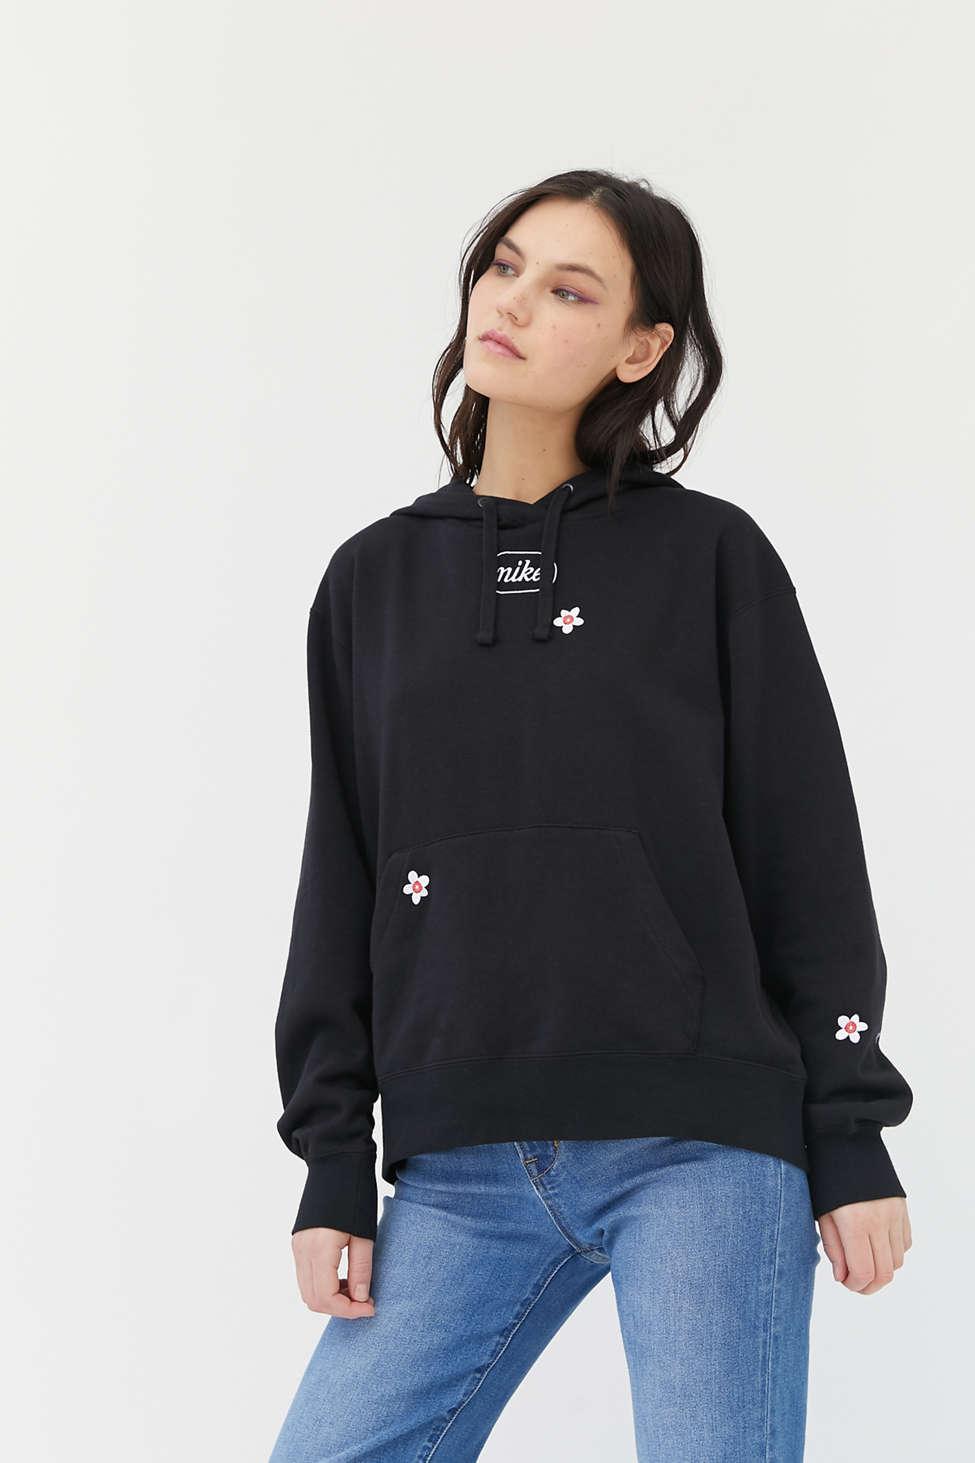 Nike Embroidered Flower Hoodie Sweatshirt in Black | Lyst